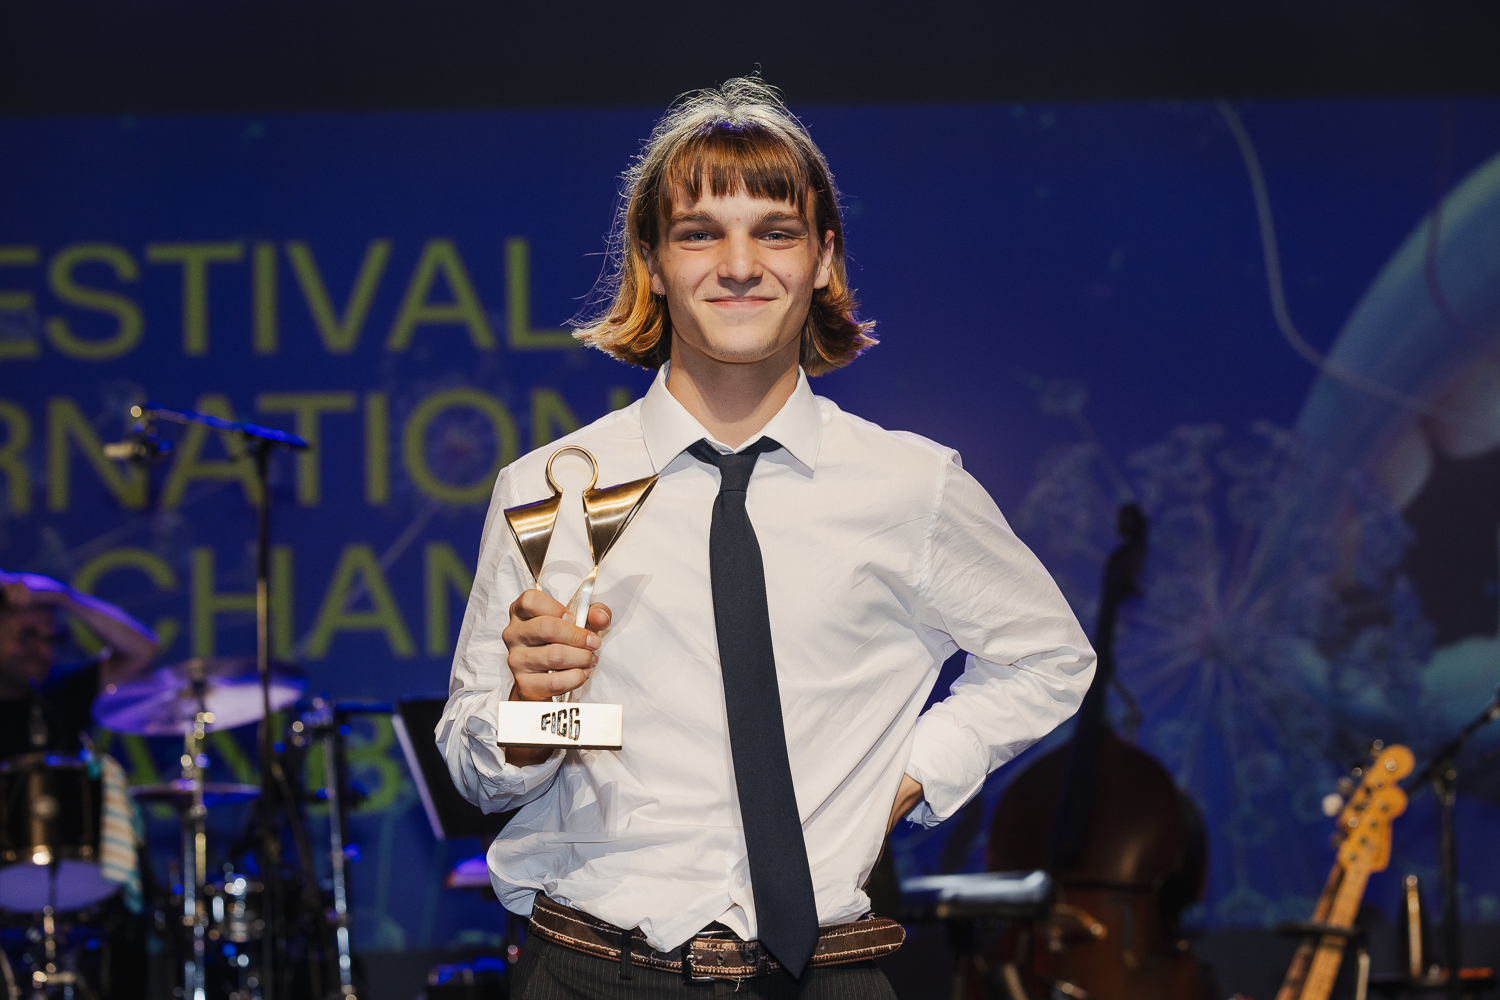 Communiqué de presse – Émile Bourgault, lauréat de la 55e édition du Grand Concours Hydro-Québec du Festival international de la chanson de Granby !